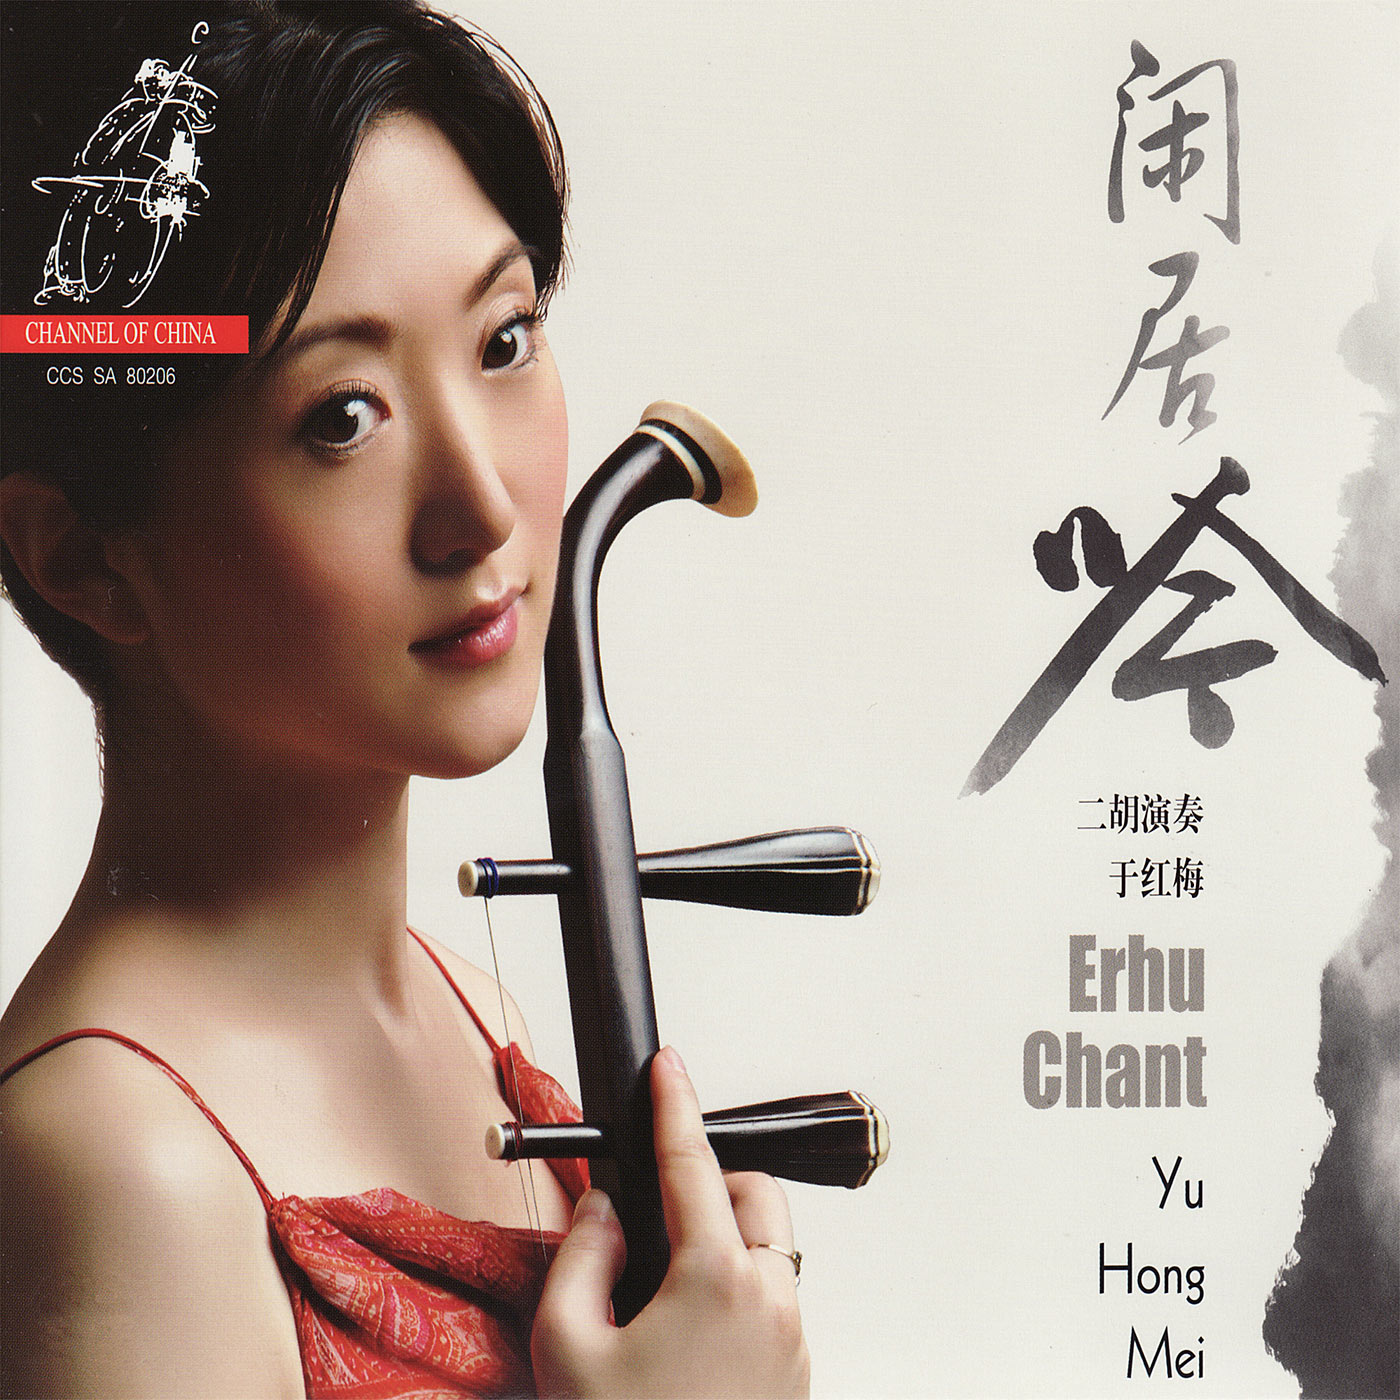 Yu Hong Mei – Erhu Chant